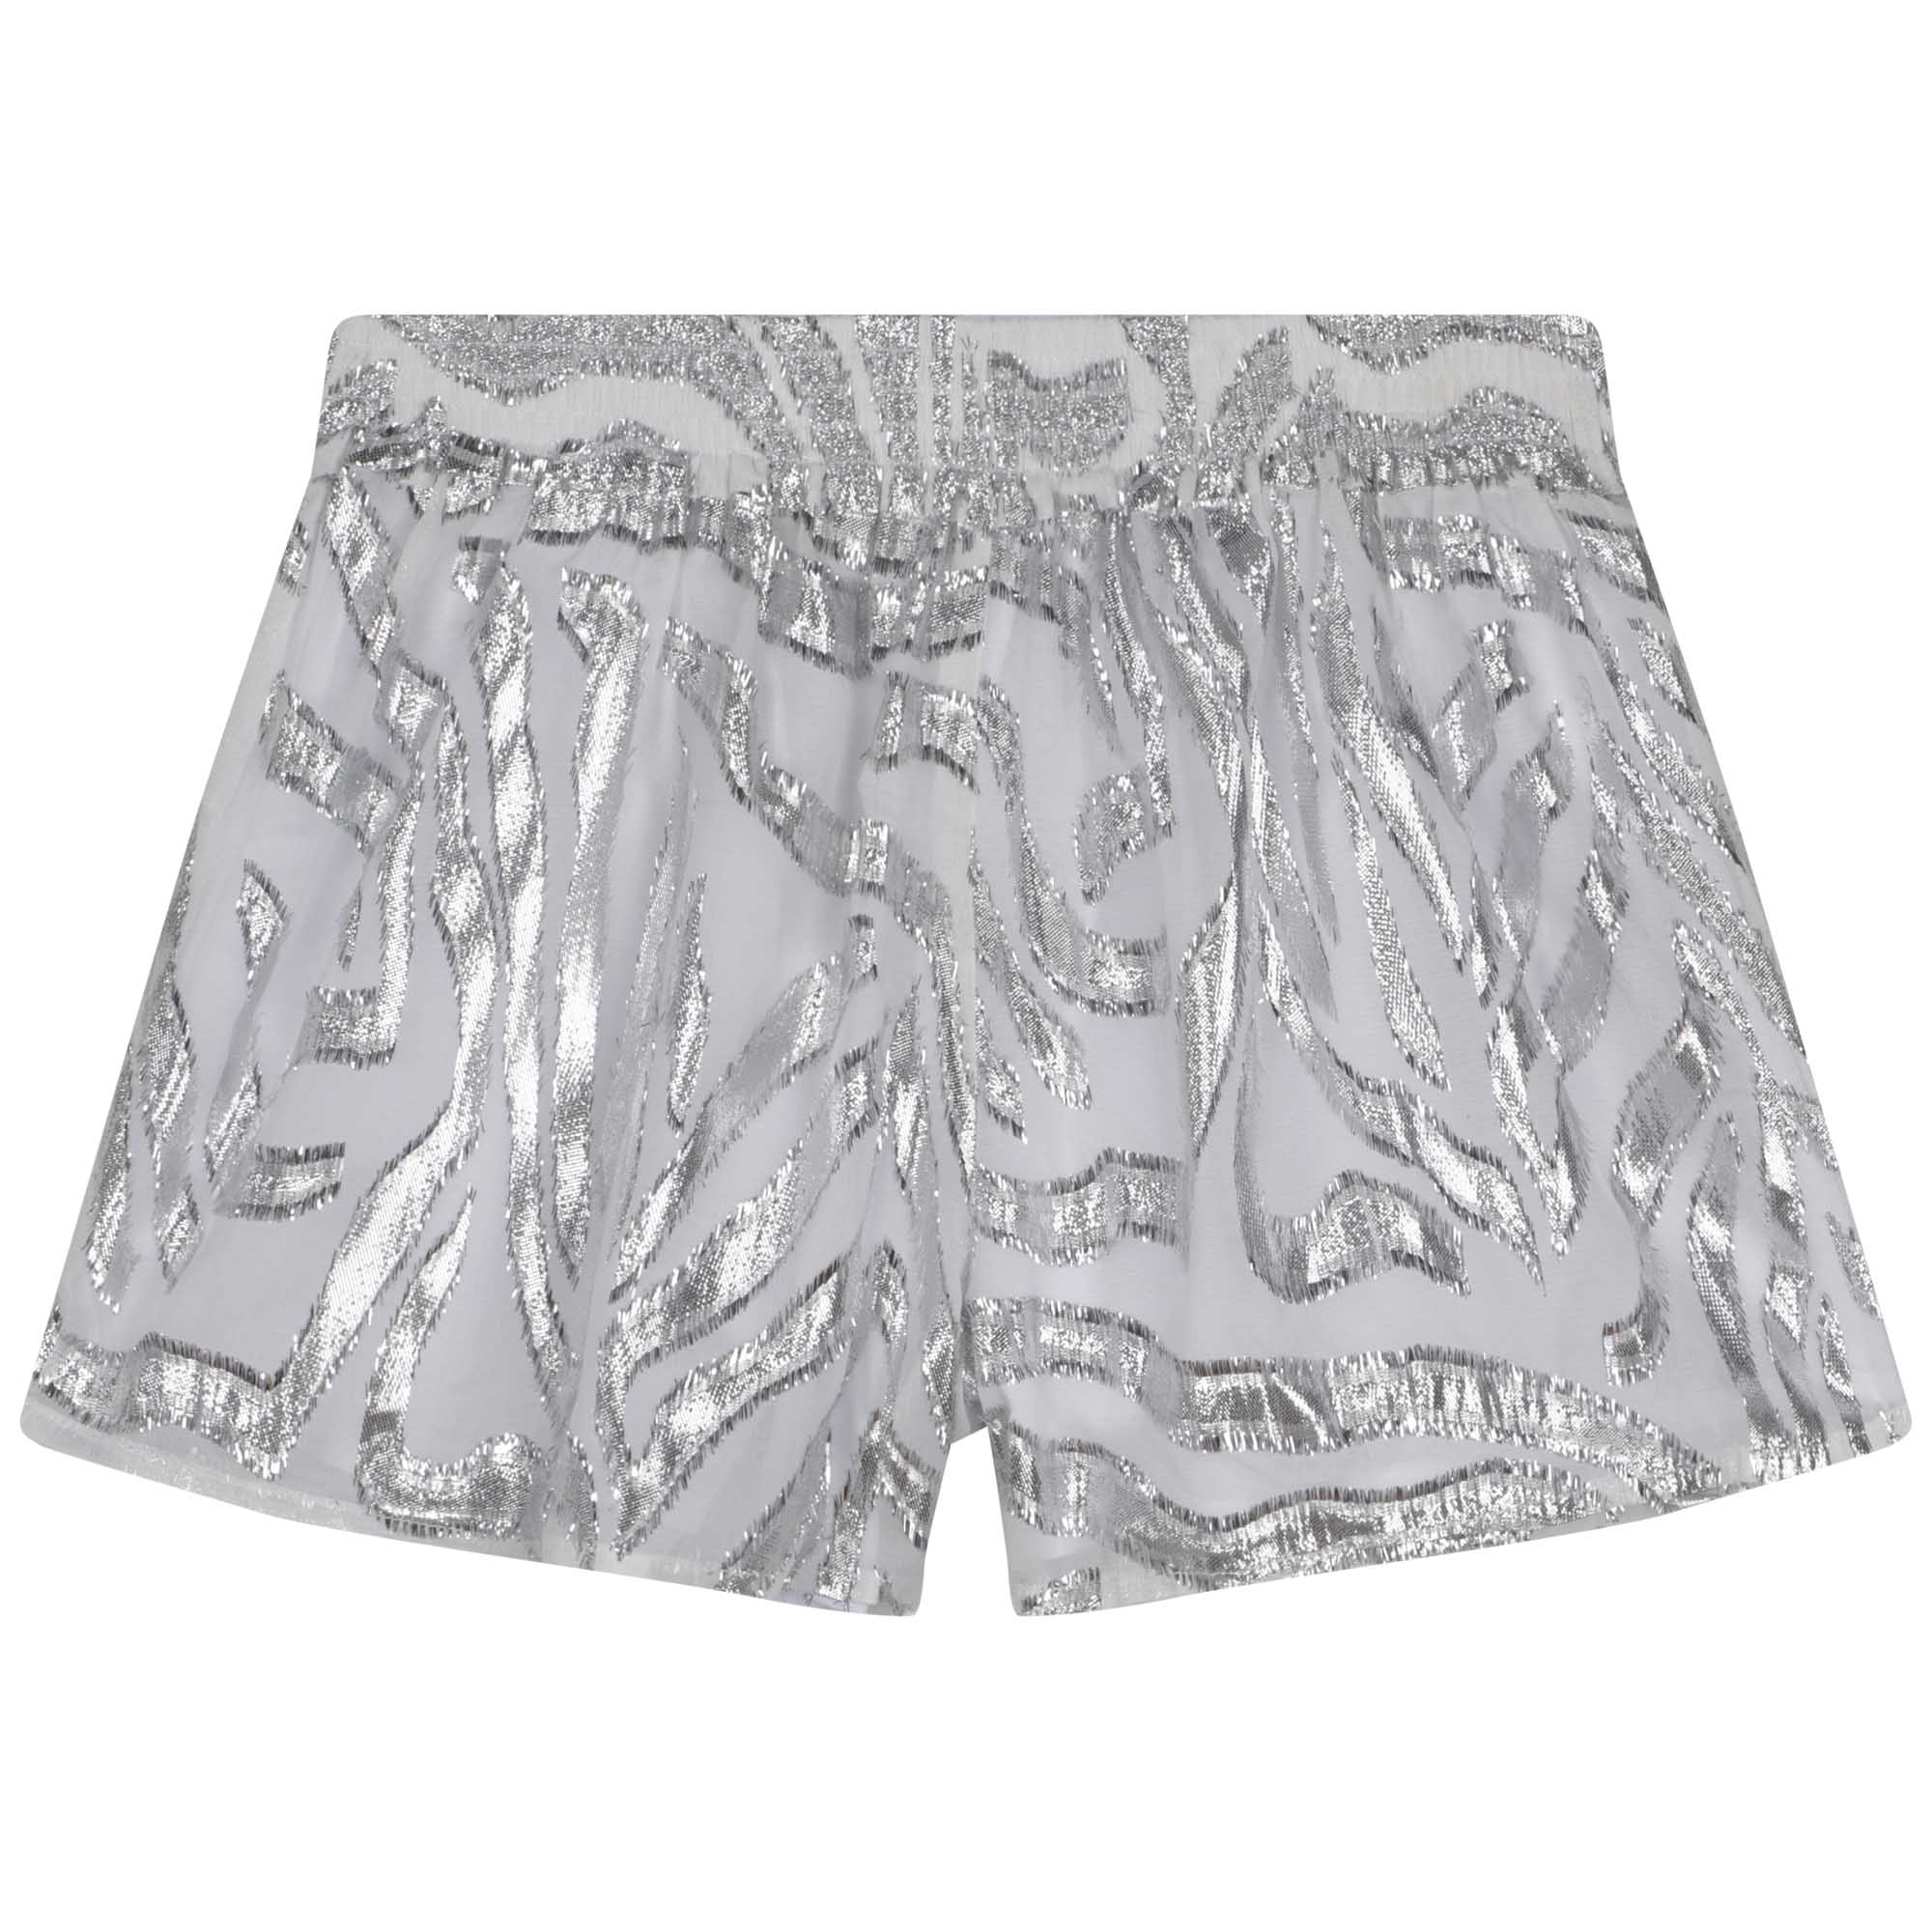 Frayed zebra-print shorts MICHAEL KORS for GIRL